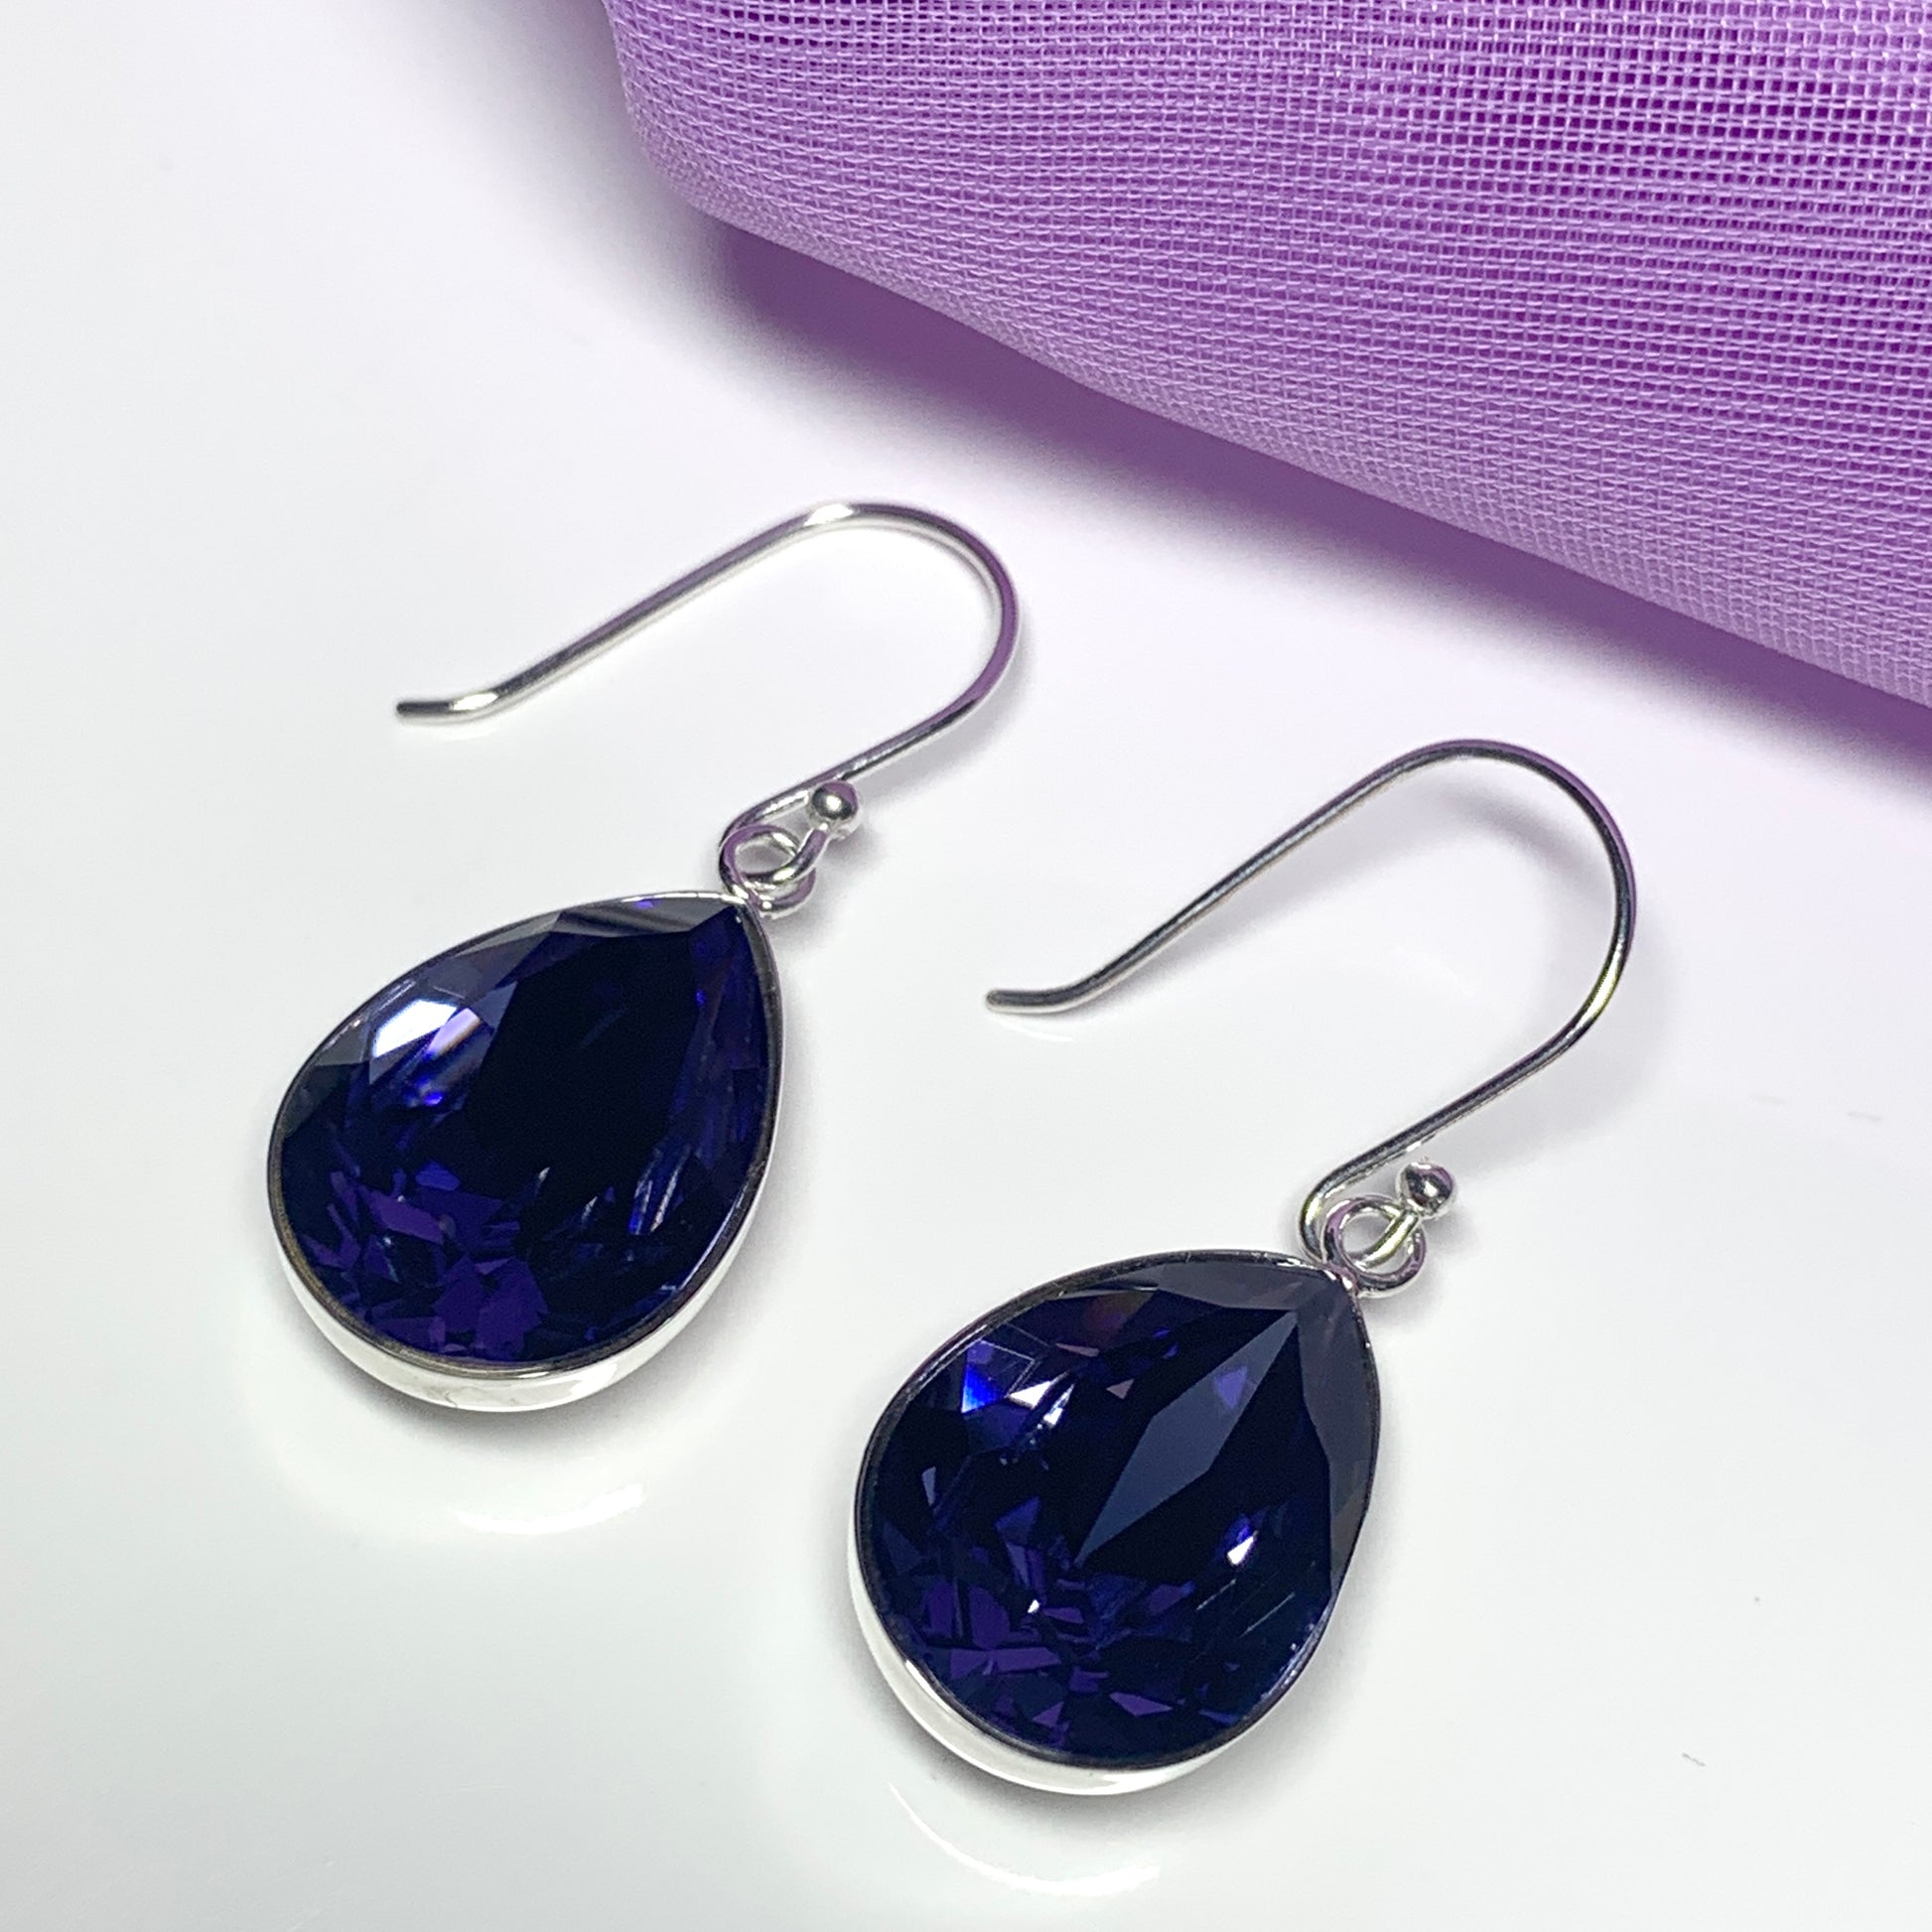 Large purple crystal drop earrings pear teardrop